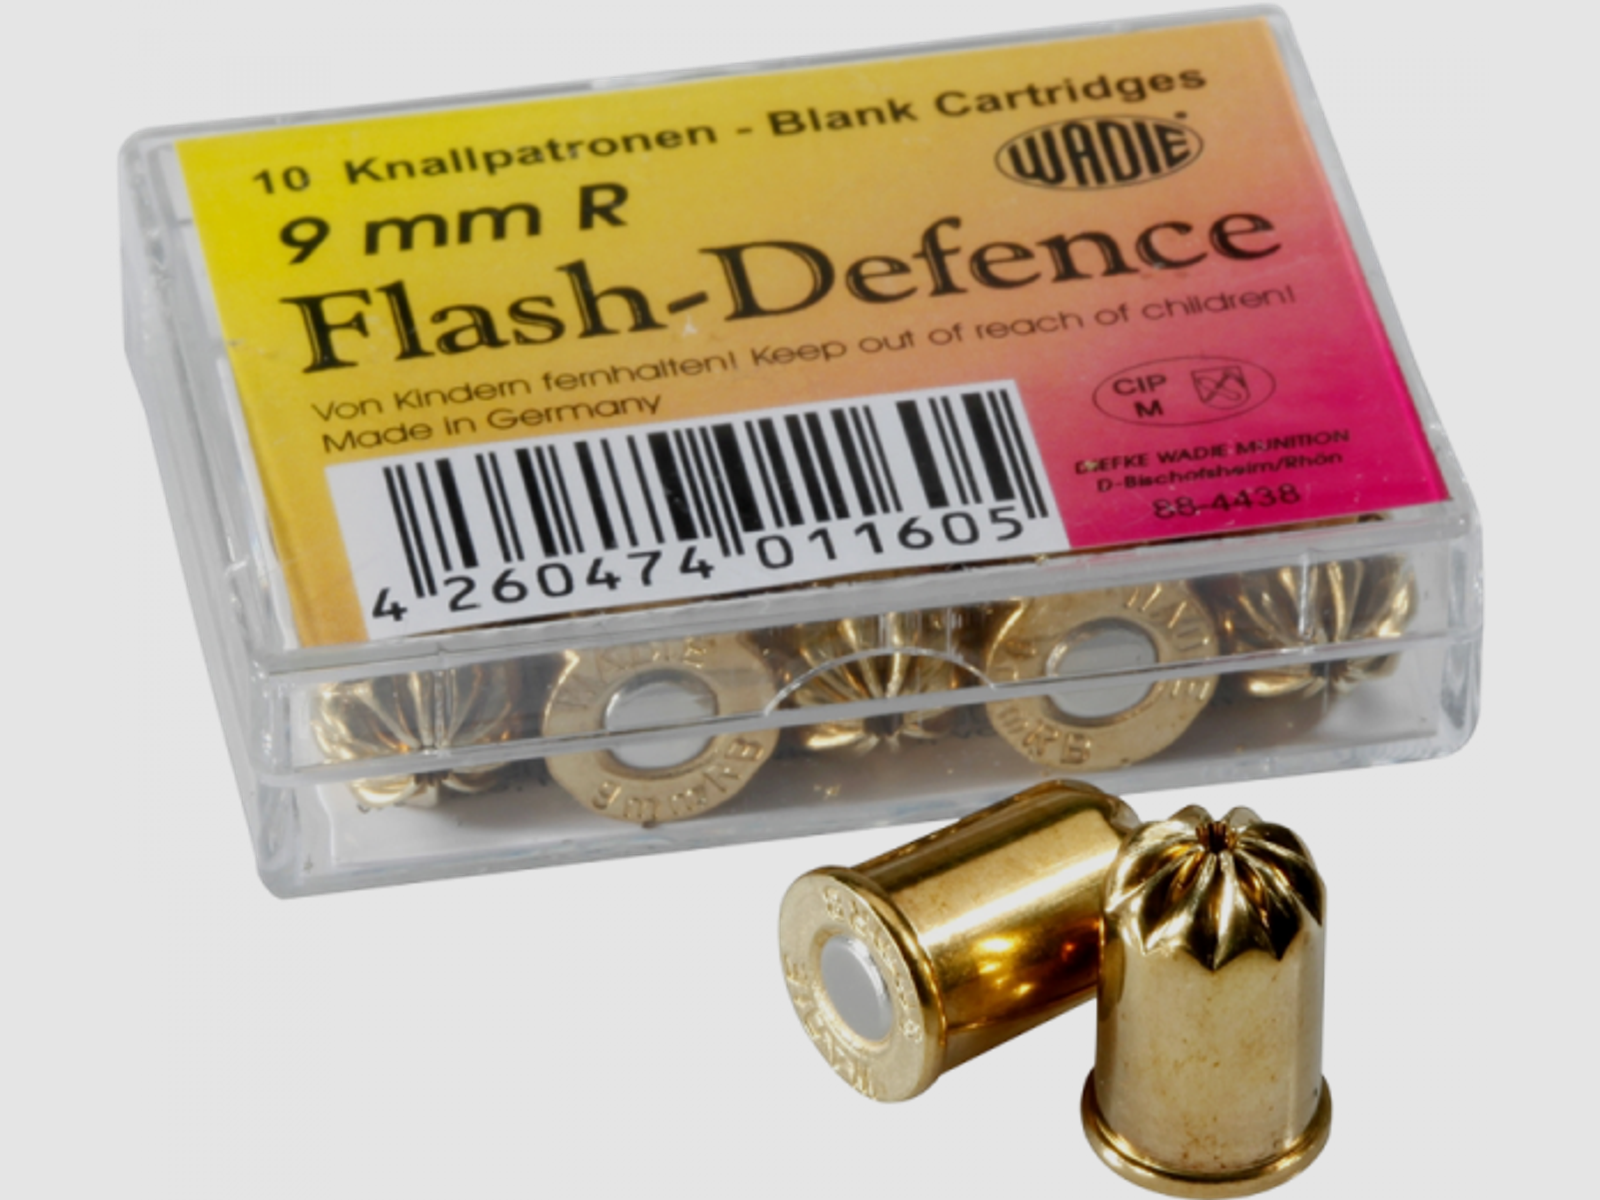 Wadie 9 mm R Knall Flash-Defense Schreckschusspatronen